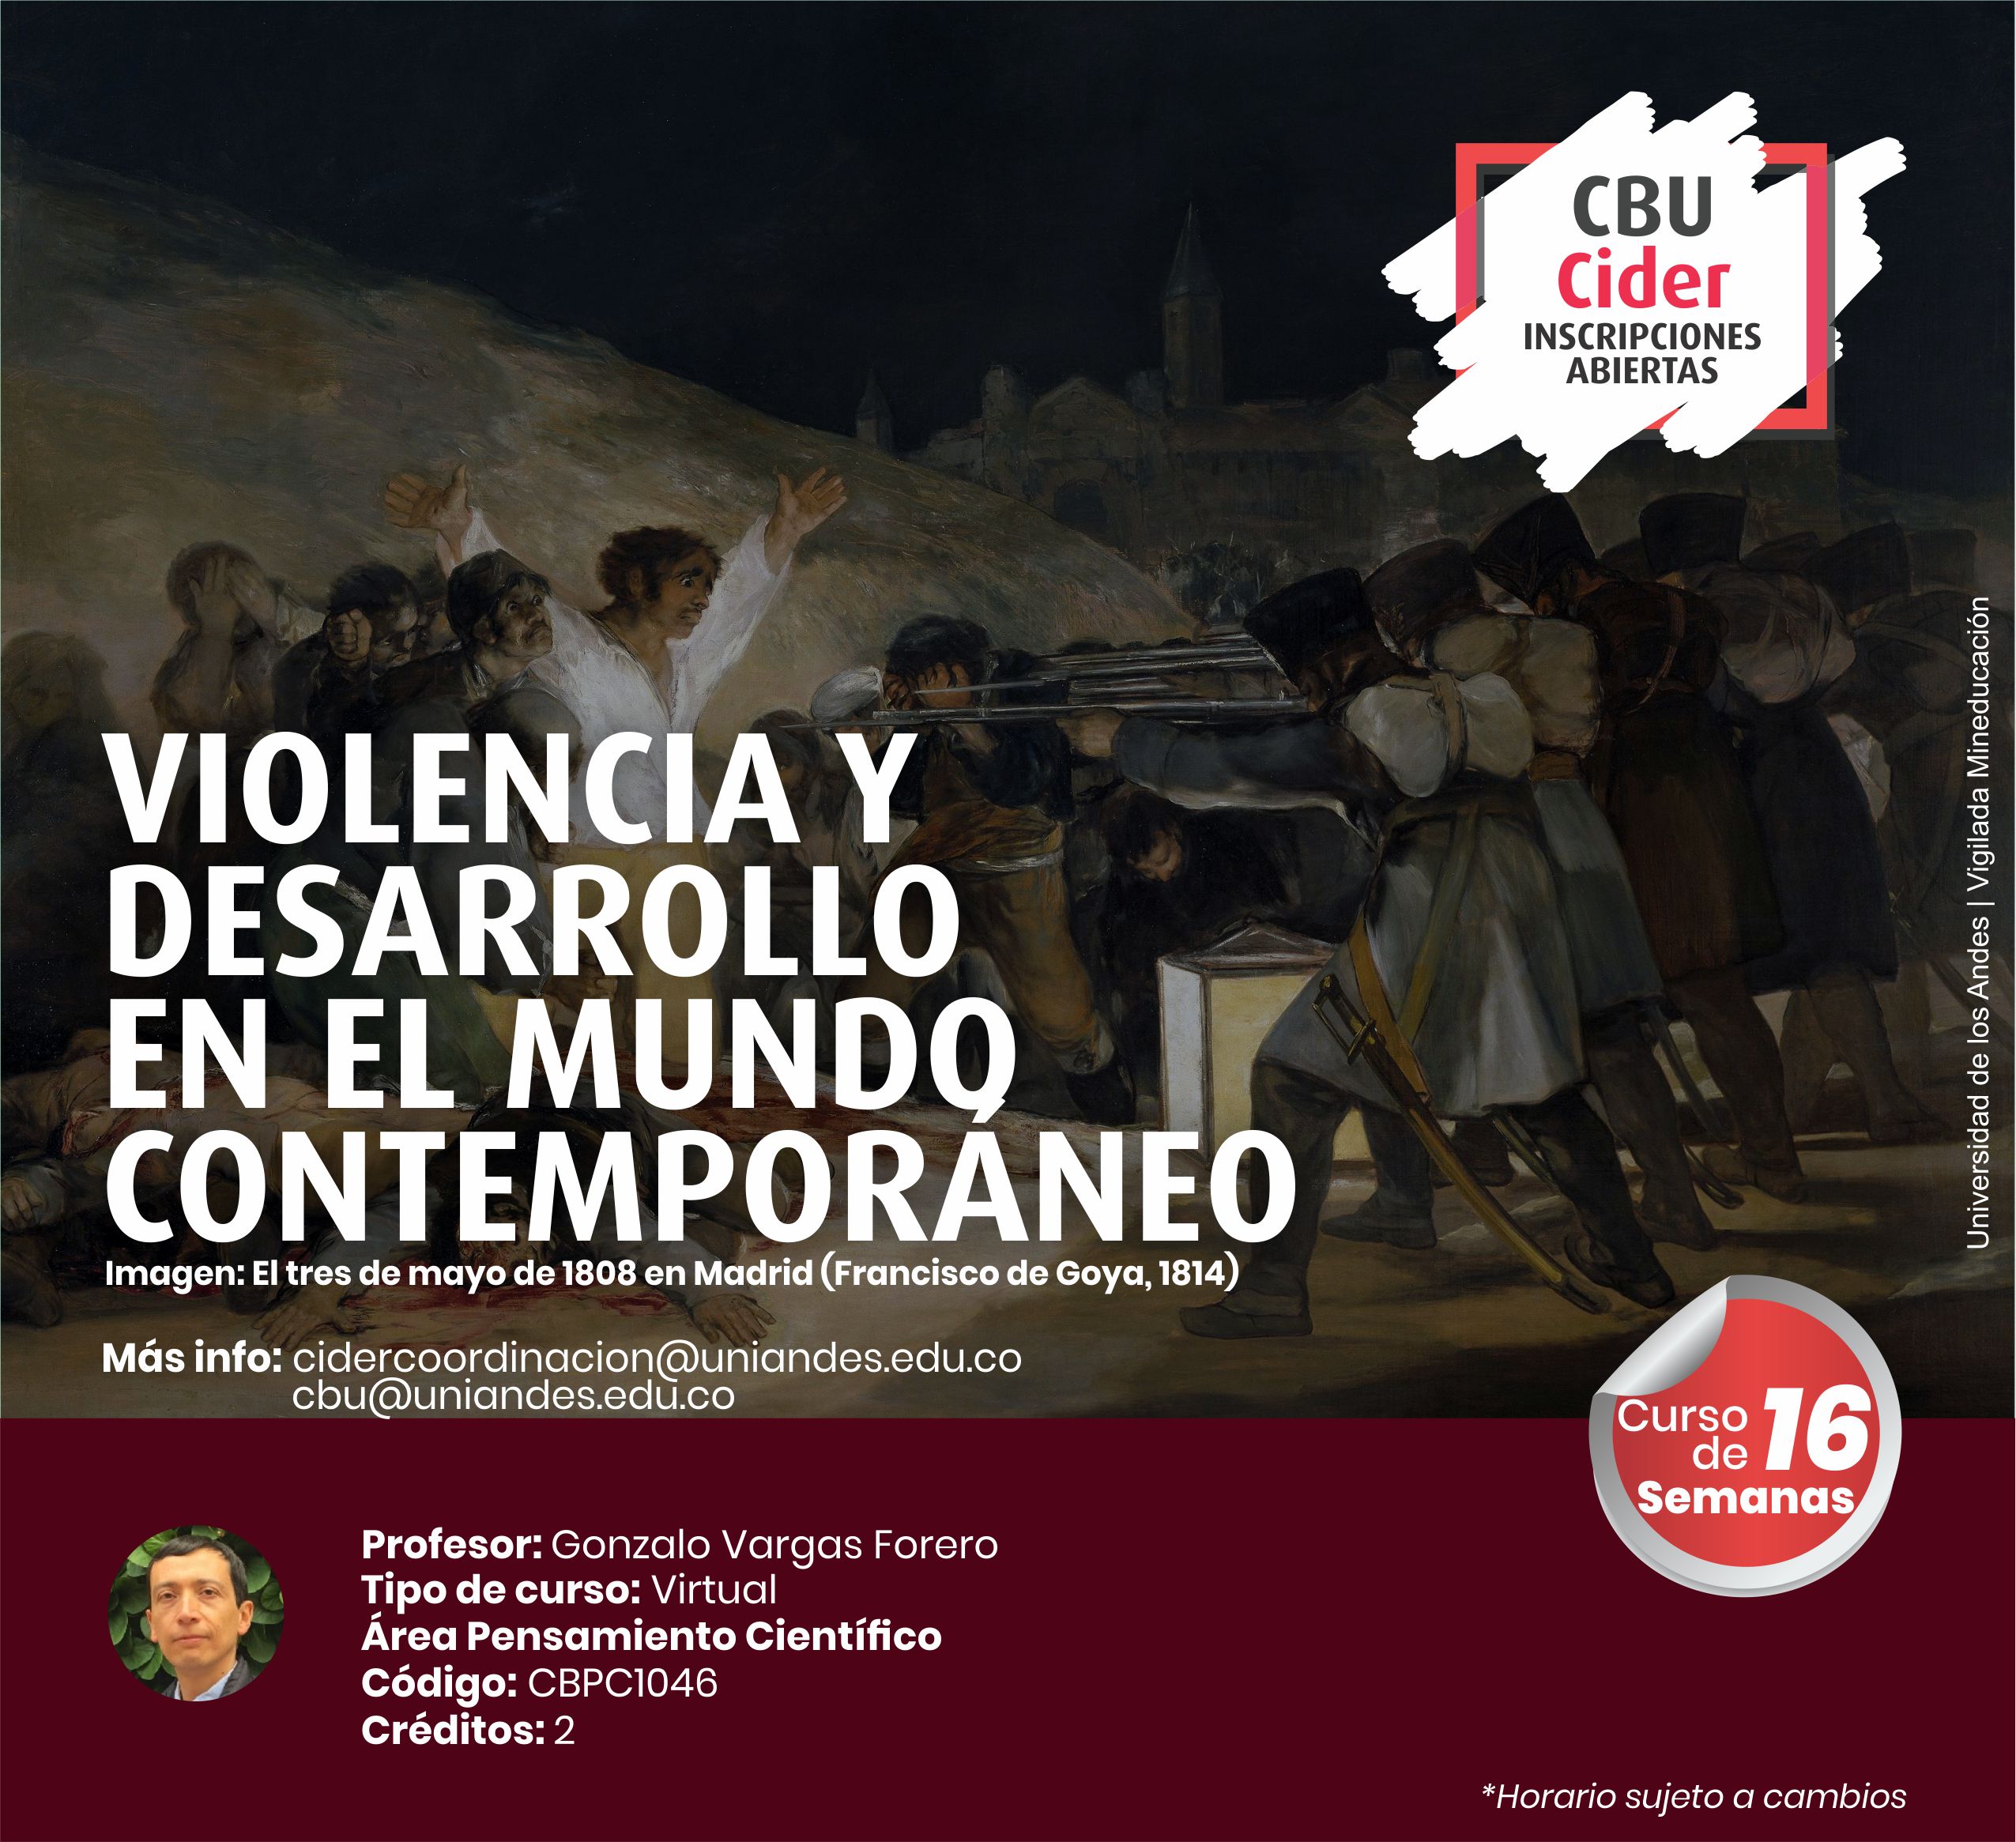 CBU: Violencia y desarrollo - Cider | Uniandes